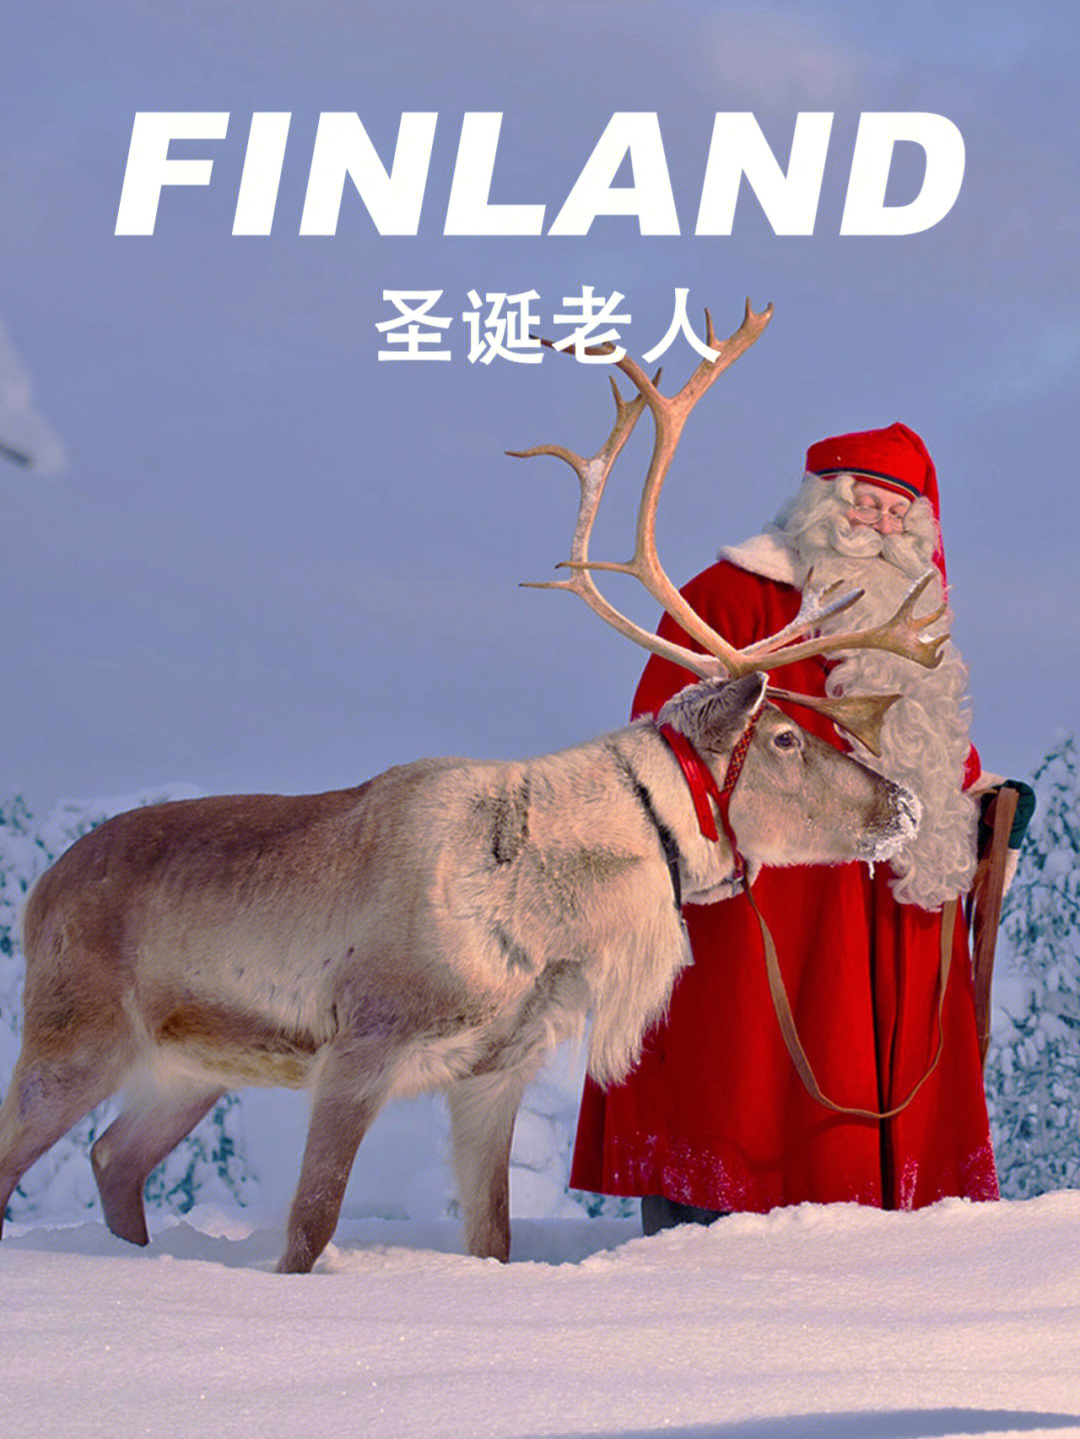 地球人都知道,那个真正而唯一的圣诞老人9199就住在芬兰